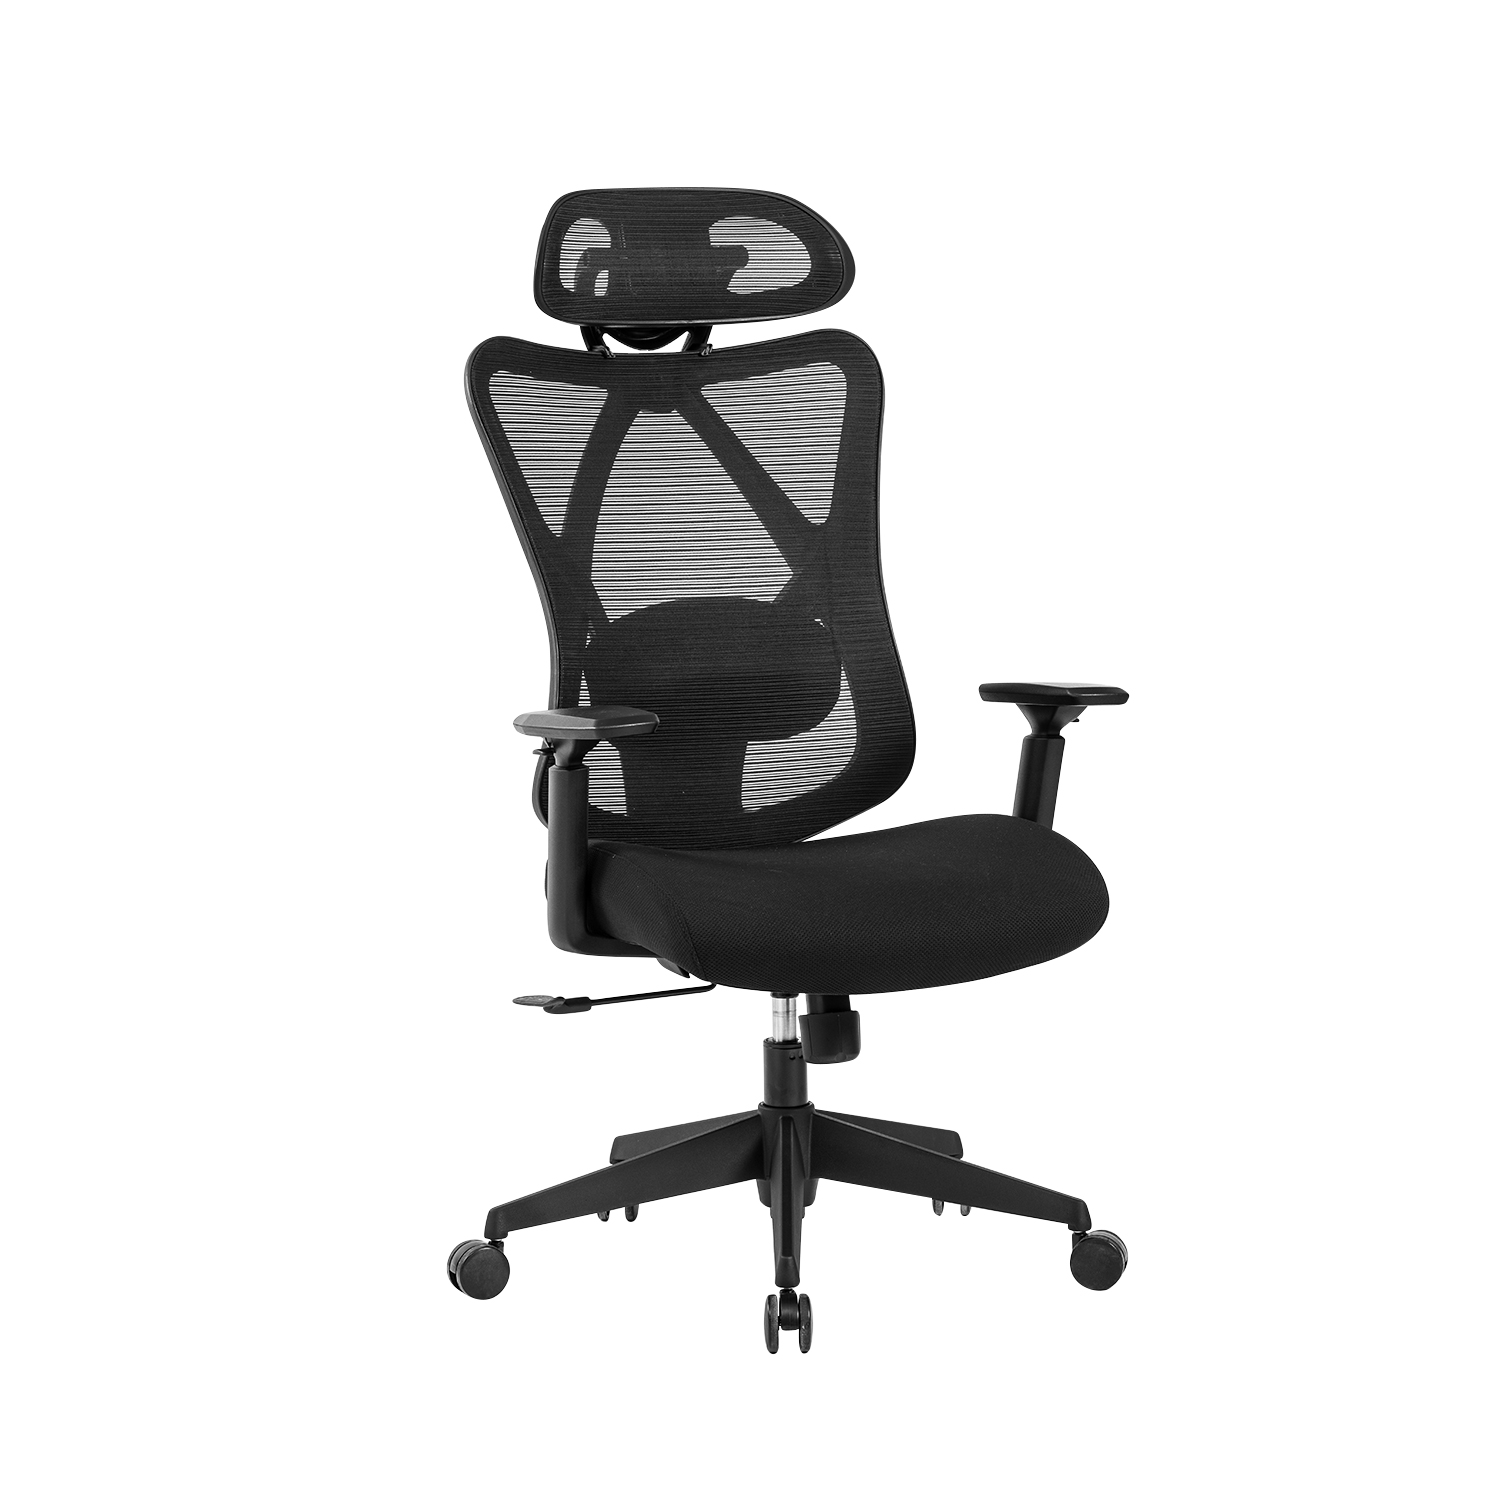 Chaise bureau ergonomique, siège de bureau à haut dossier, fauteuil de  bureau en maille respirante avec appuie-tête réglable, accoudoir reglable,  support lombaire réglable, pivotant 360° IKI-Officechair-5-black - Conforama